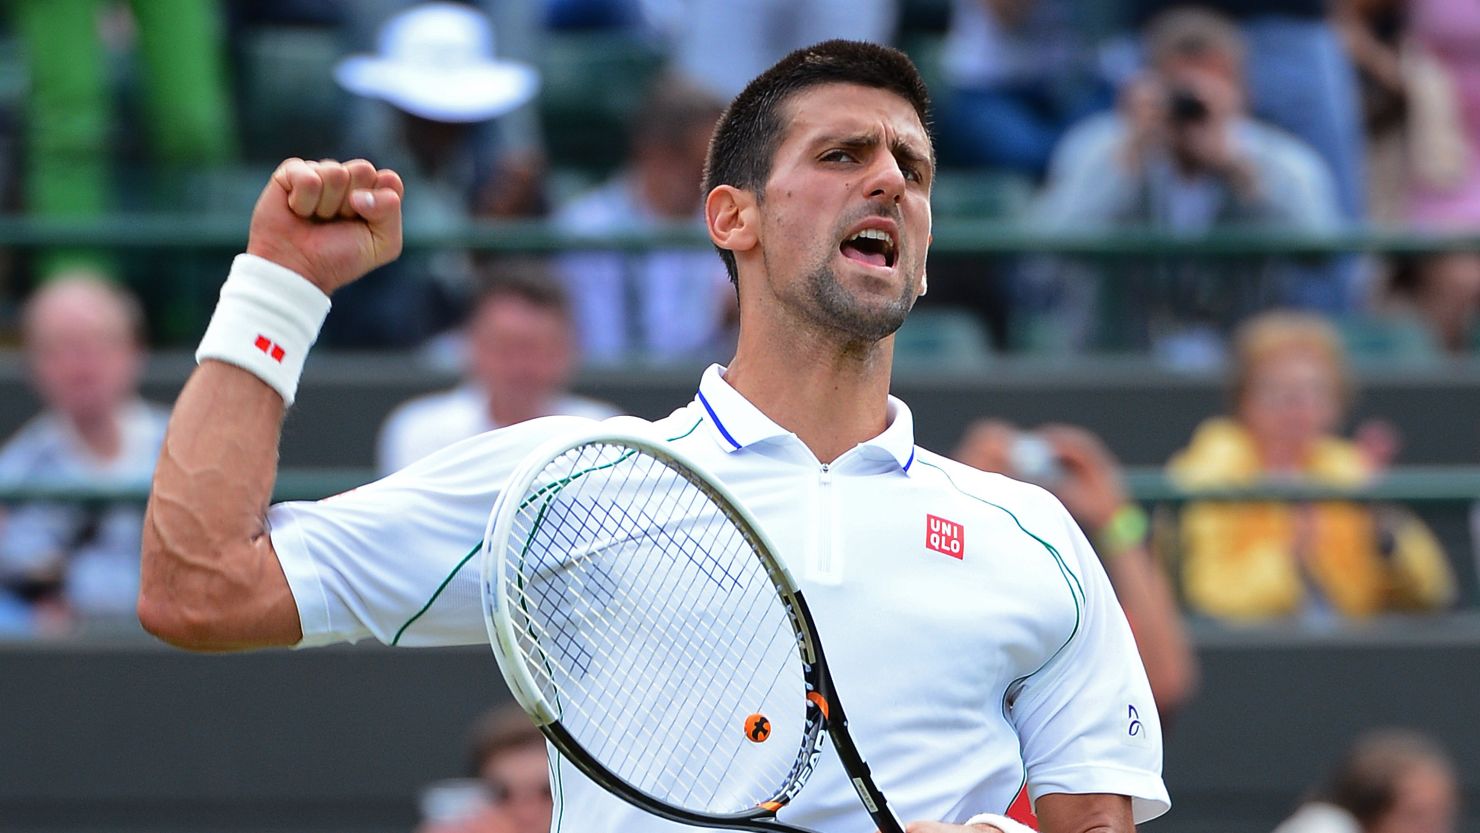 Novak Djokovic celebrates his quarterfinal victory over Florian Mayer at Wimbledon.